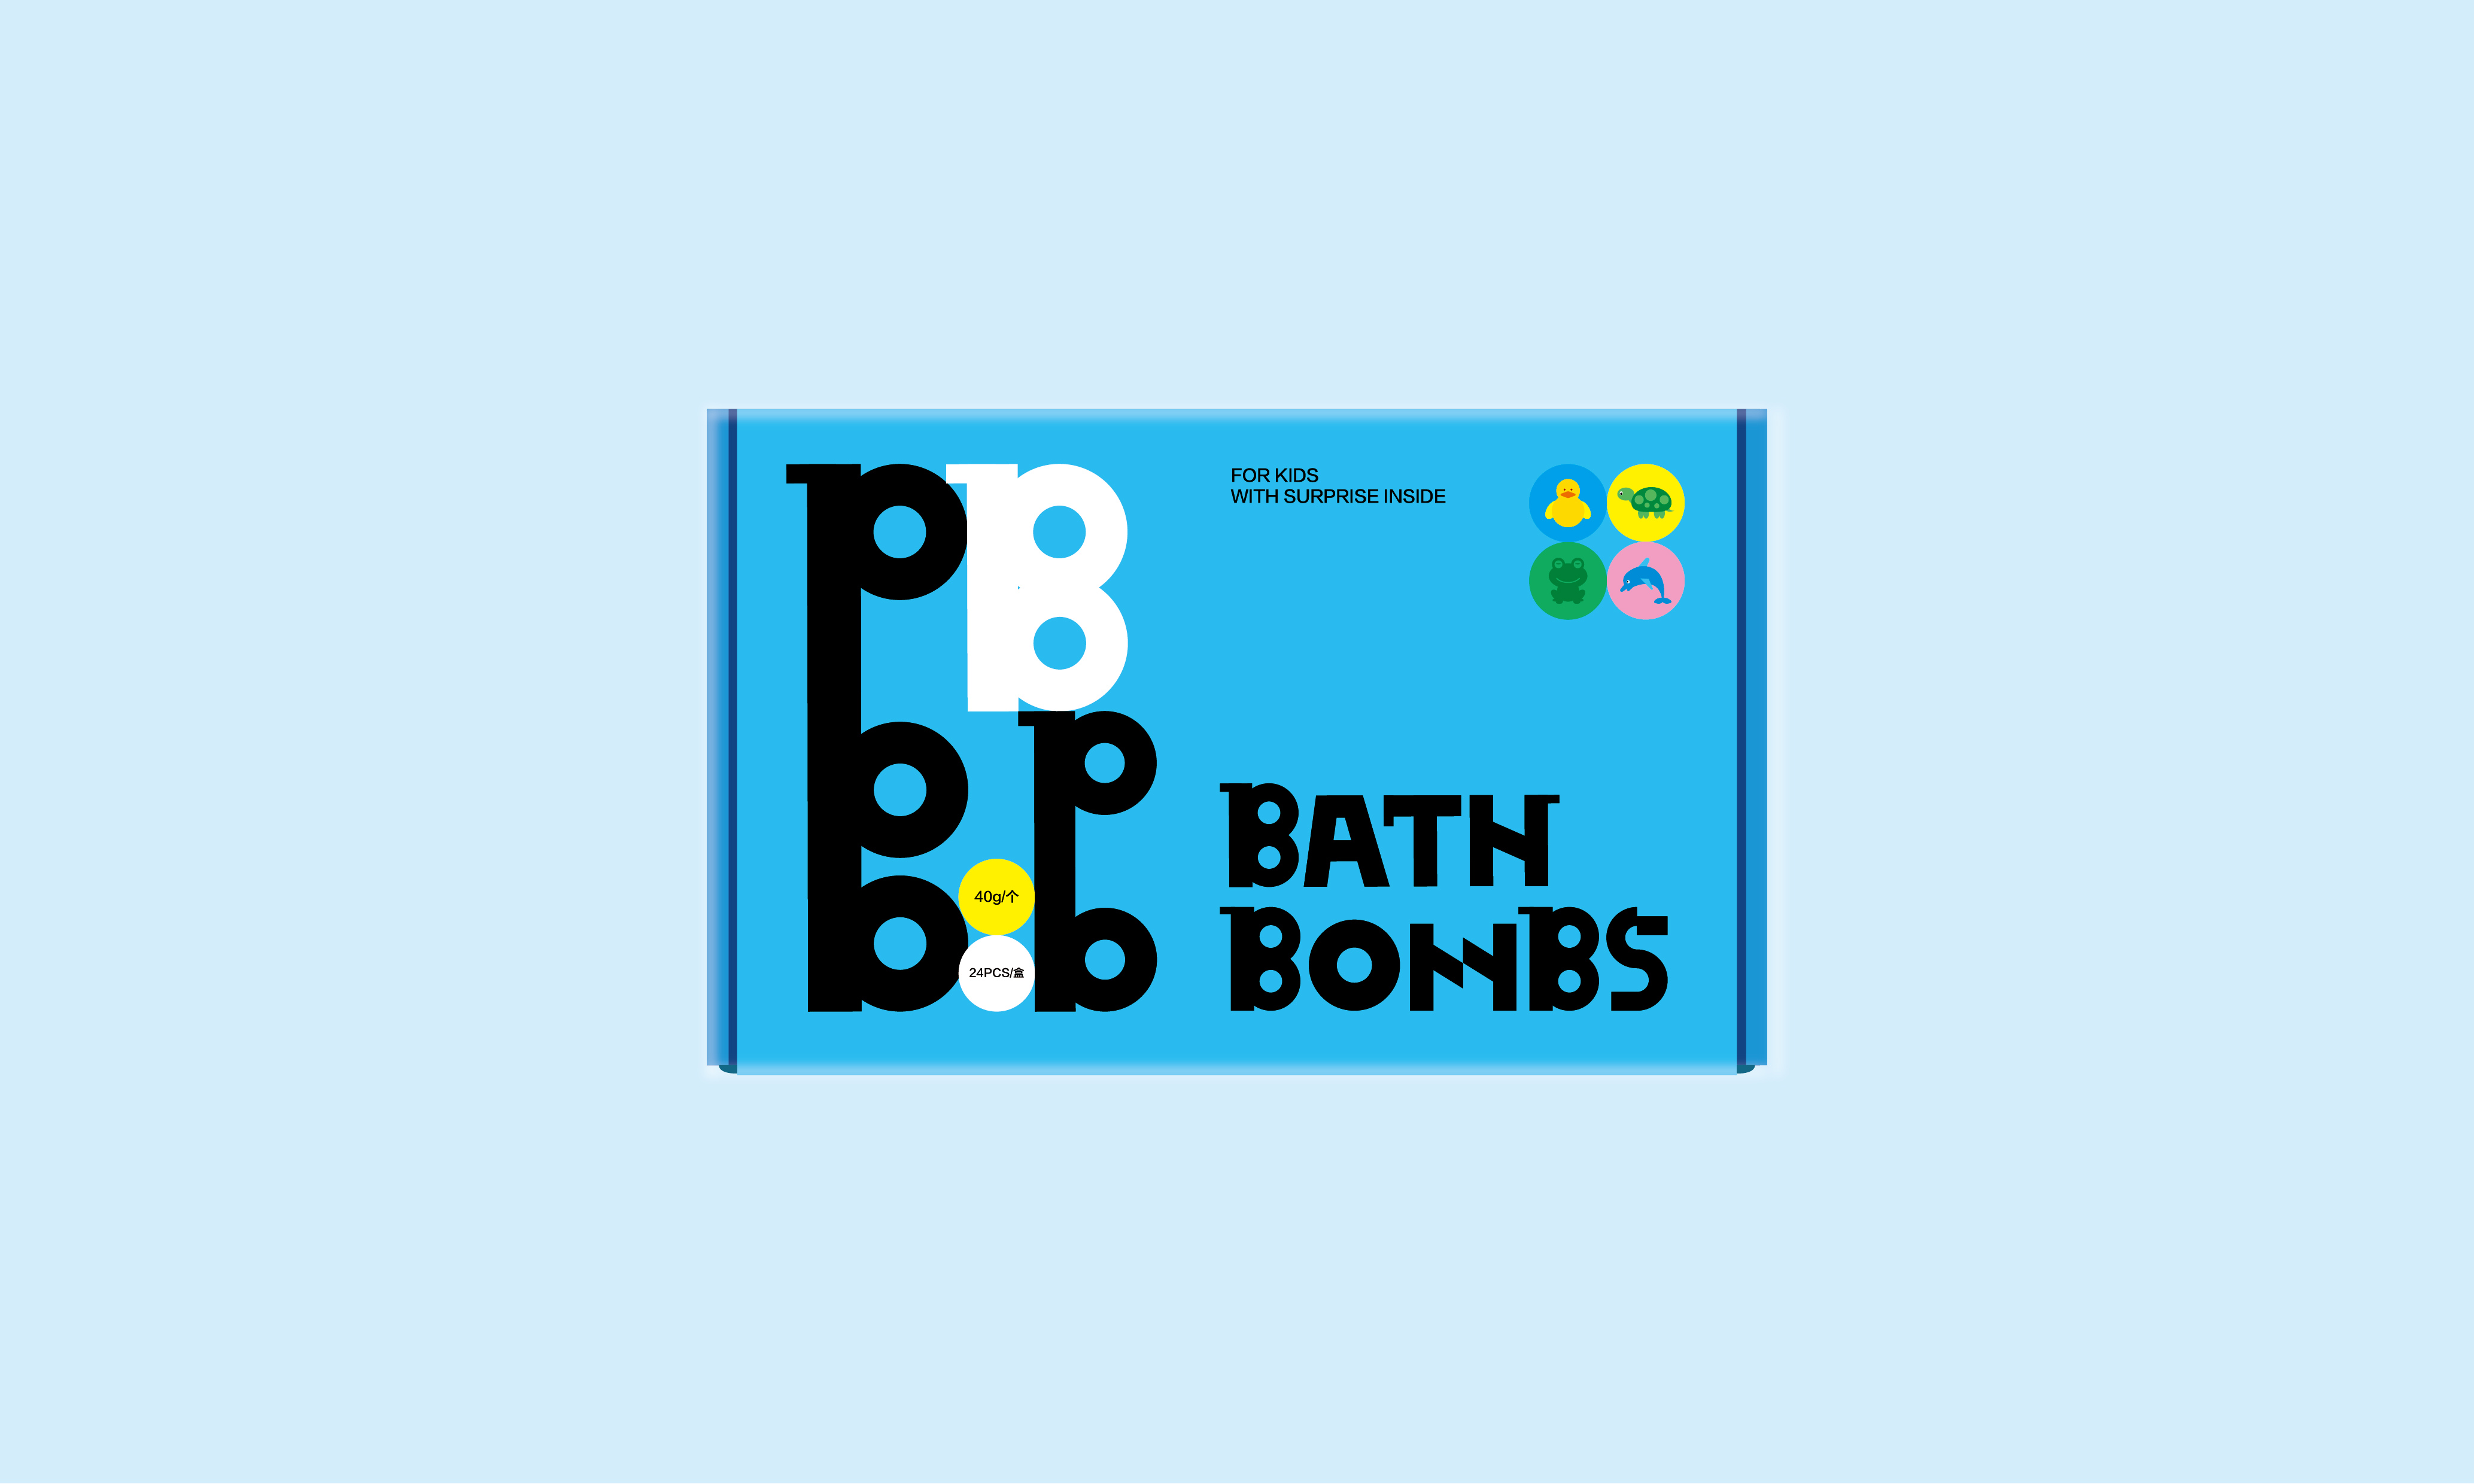 BATH BOMBS婴儿浴盐球包装盒视觉设计